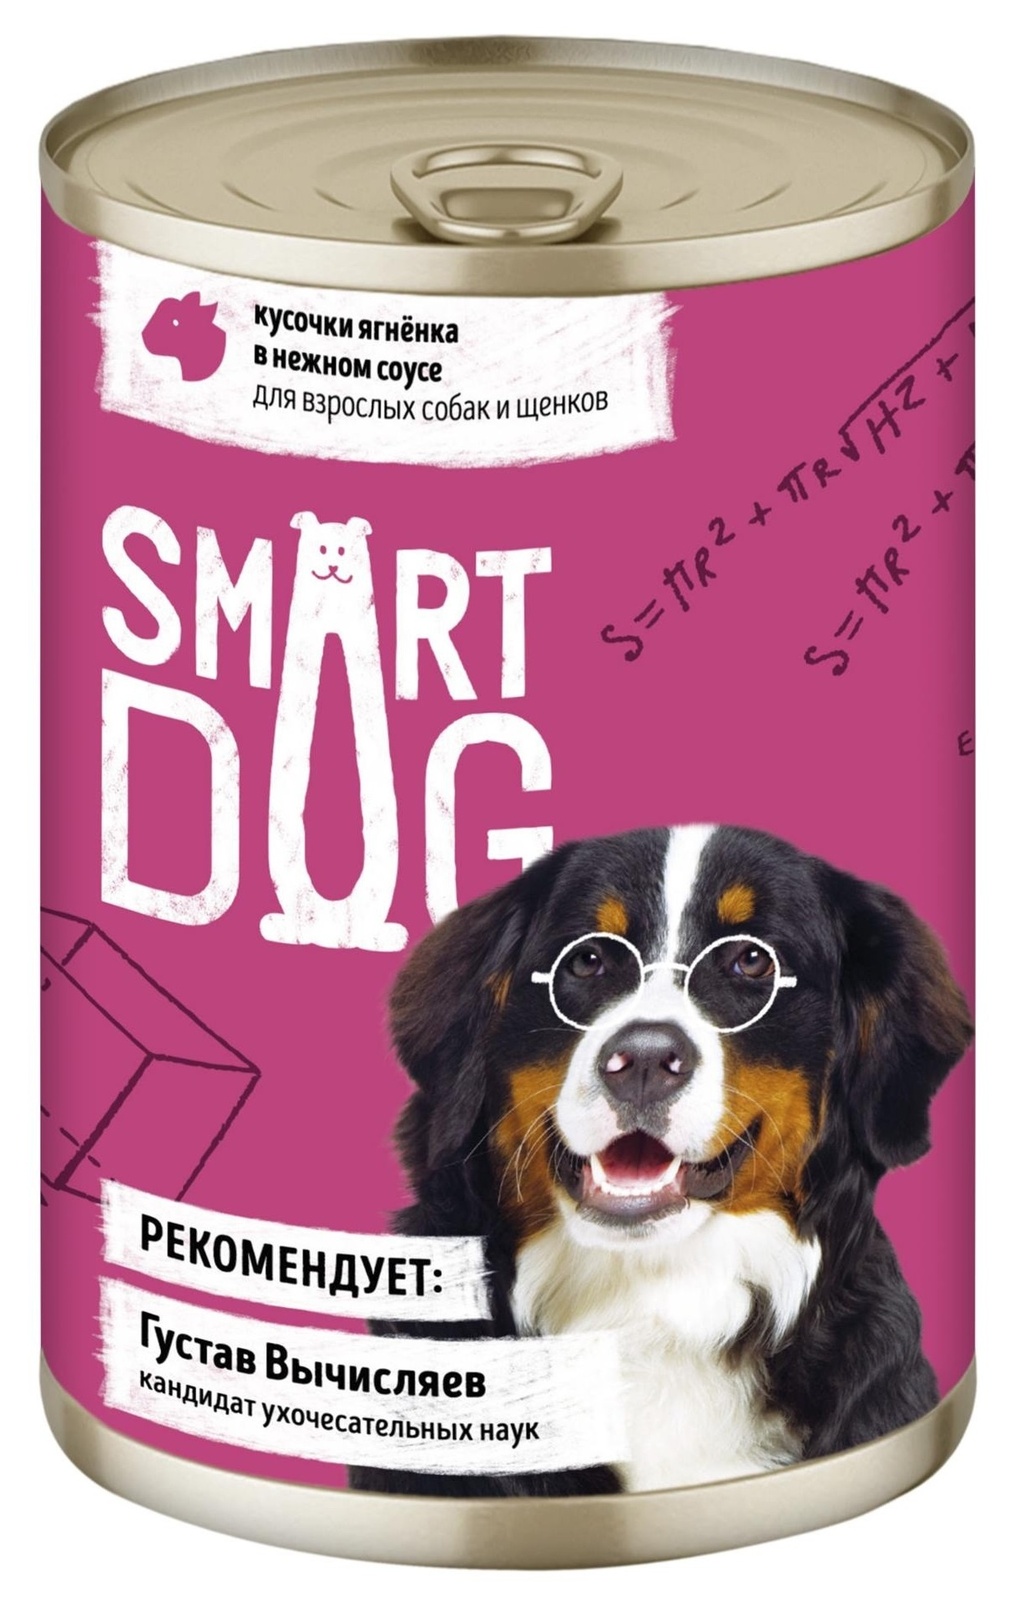 Smart Dog консервы Smart Dog консервы консервы для взрослых собак и щенков: кусочки ягненка в нежном соусе (240 г)